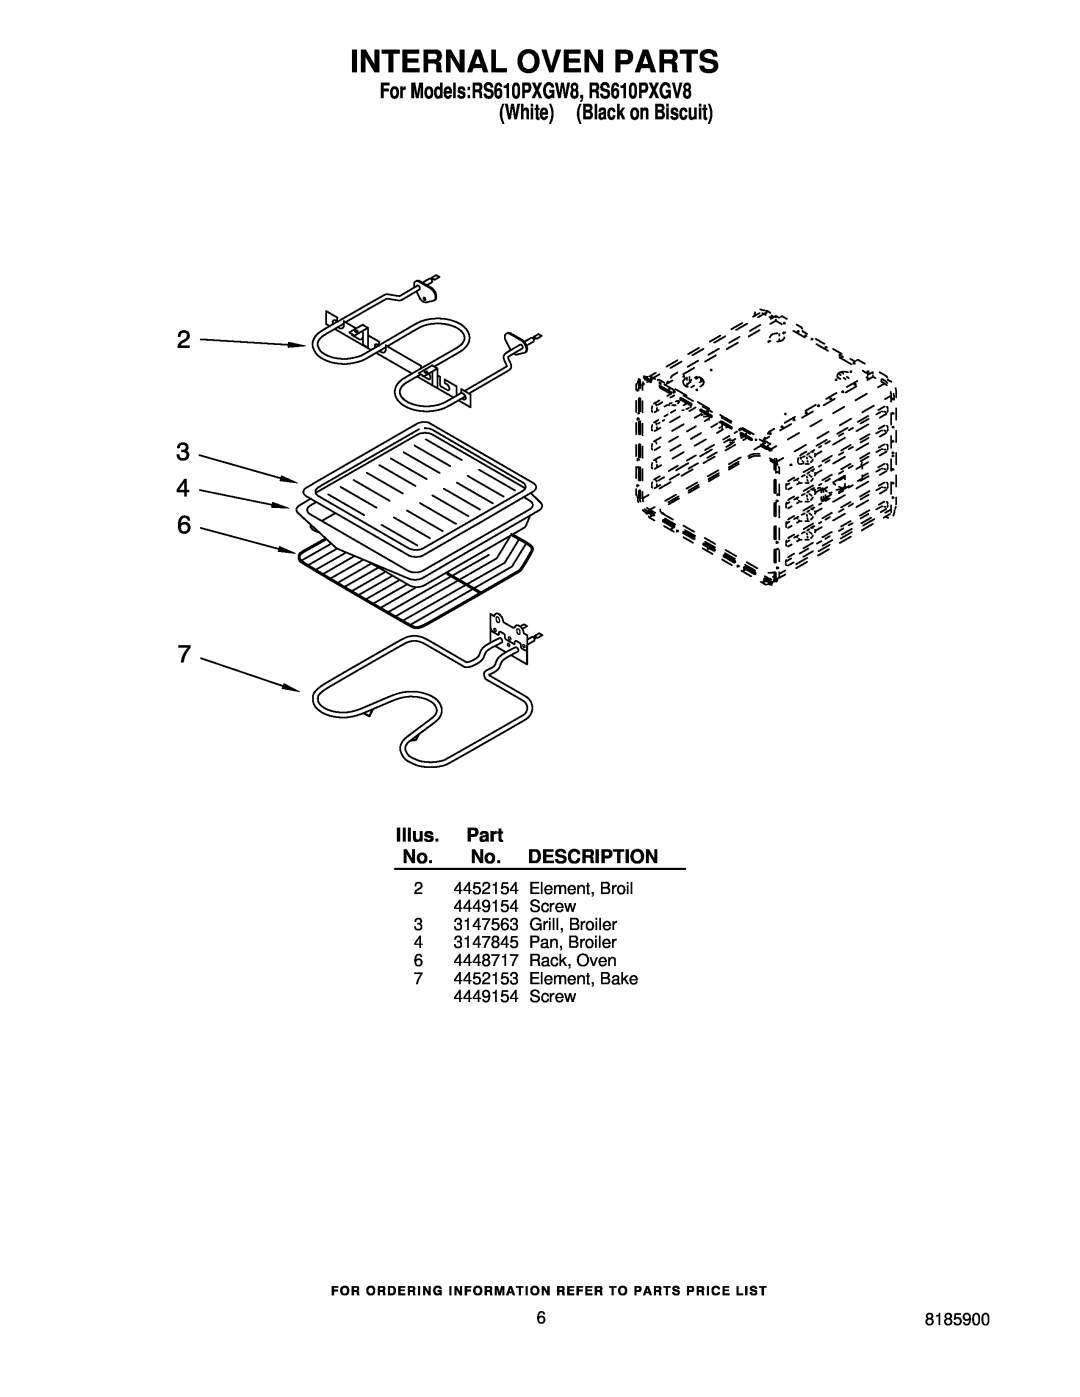 Whirlpool RS610PXGV8 Internal Oven Parts, Illus. Part No. No. DESCRIPTION, Element, Broil 4449154 Screw, 8185900 